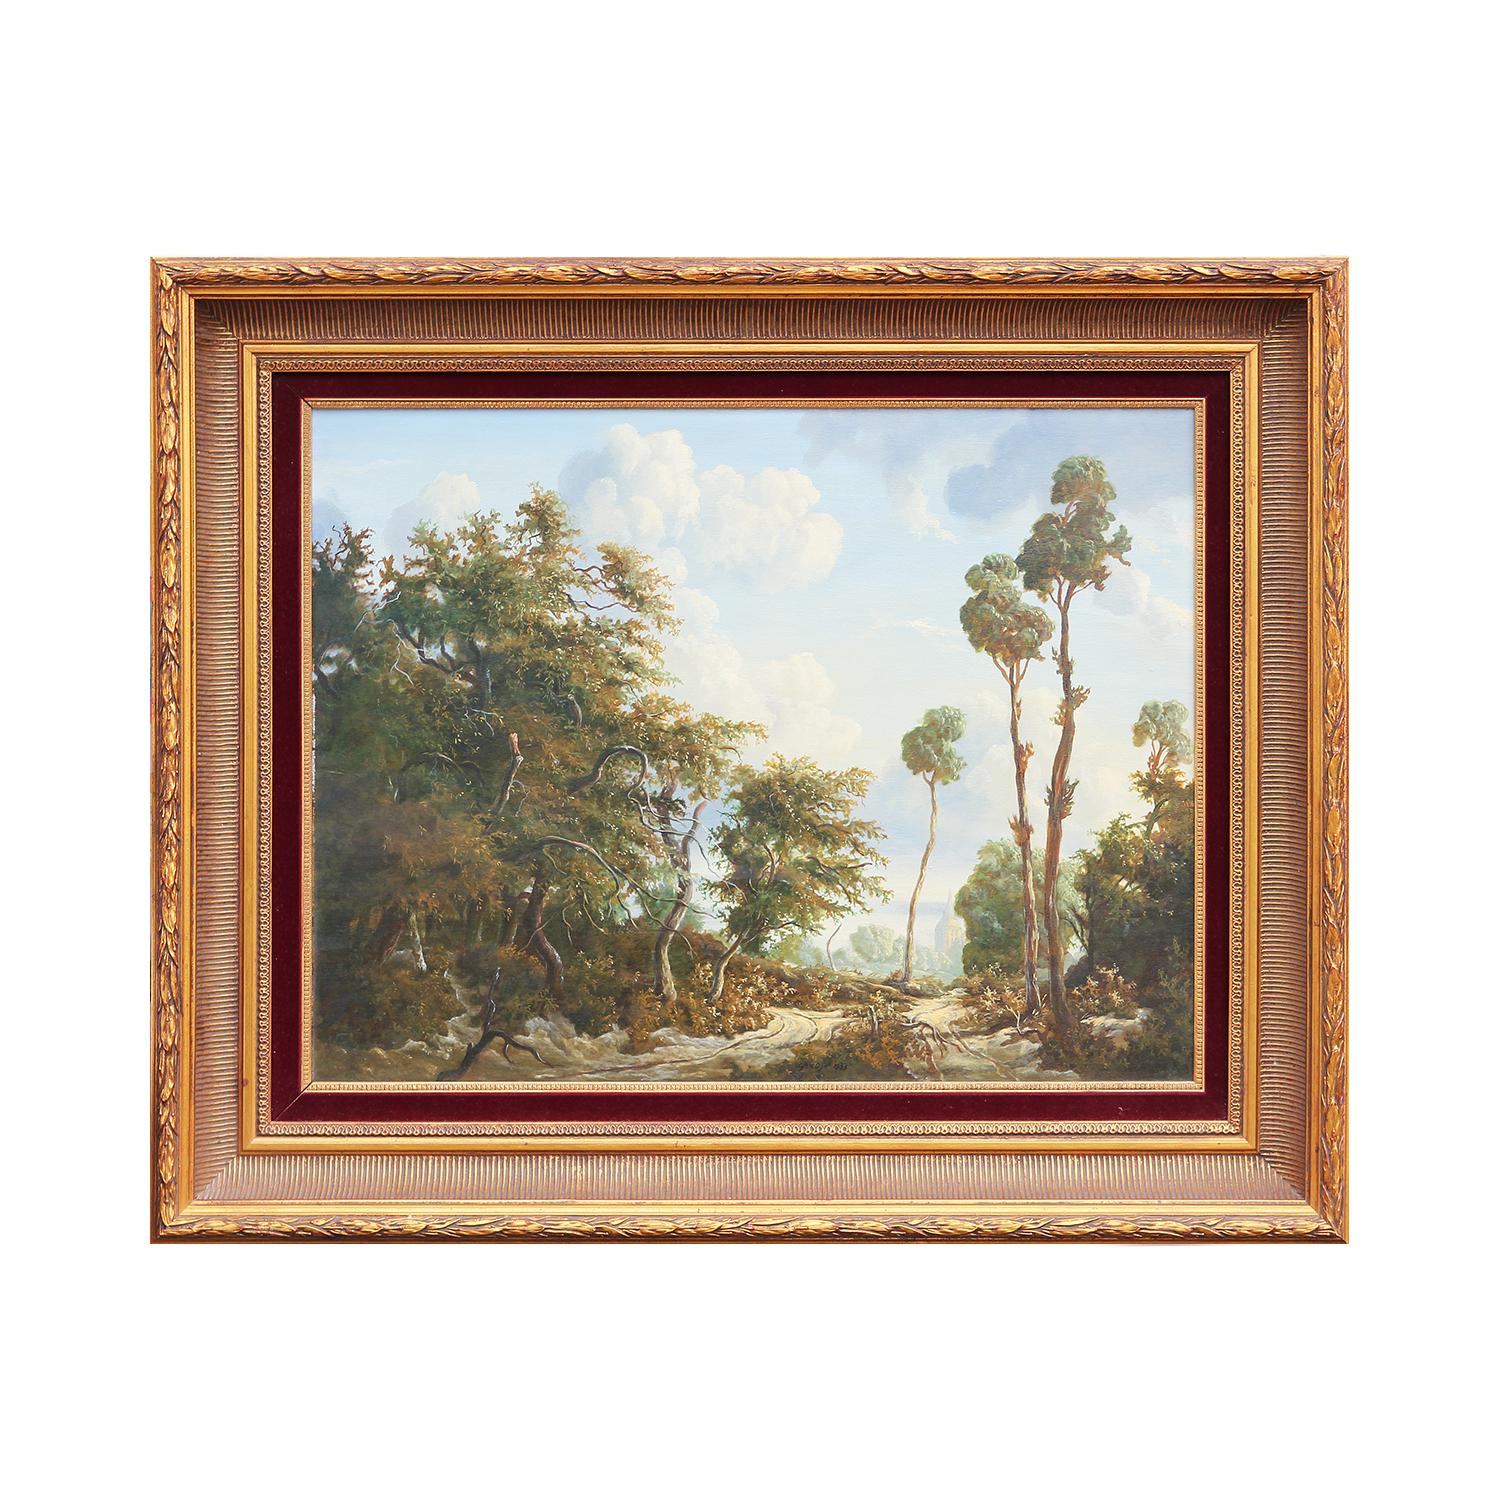 Natürliches, naturalistisches, romantisches Landschaftsgemälde im romantischen Stil eines niederländischen Waldes – Painting von Cja. V. Dijk